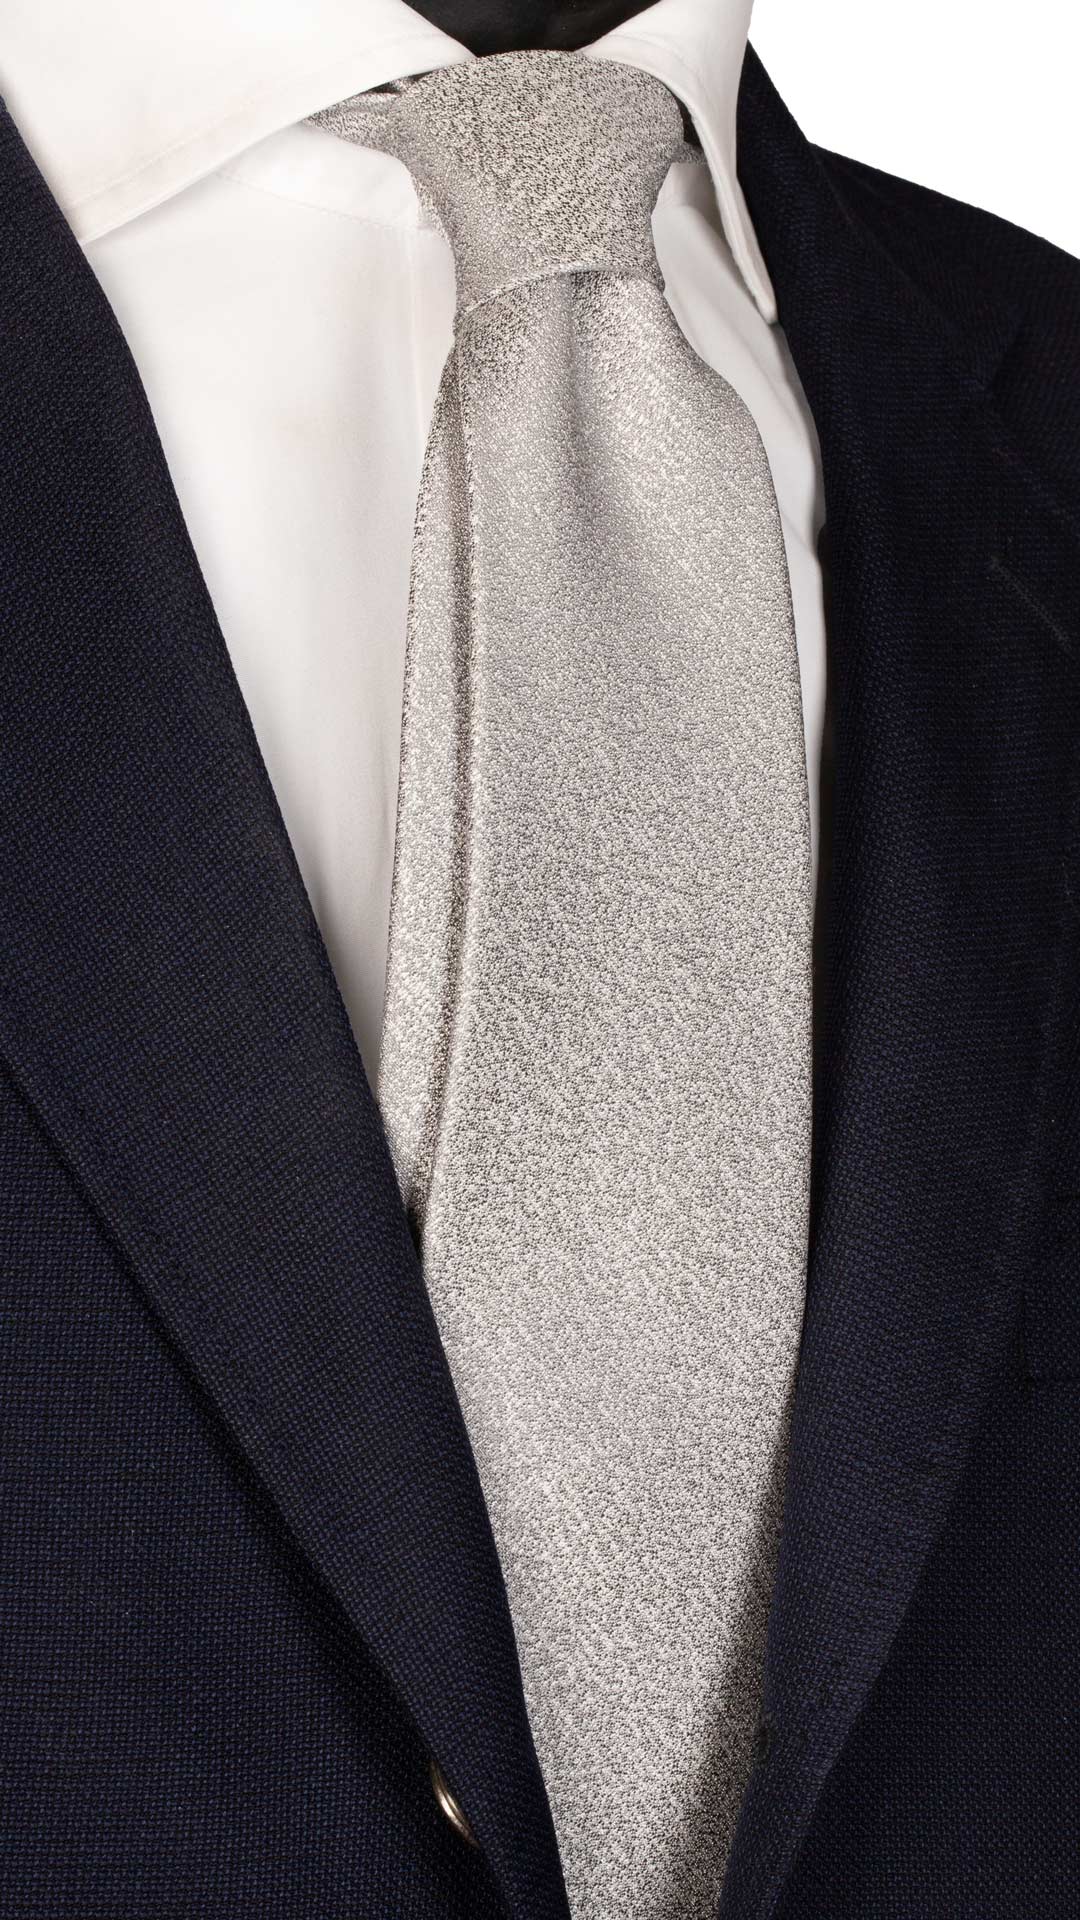 Cravatta da Cerimonia di Seta Grigia Effetto Satinato Made in Italy Graffeo Cravatte